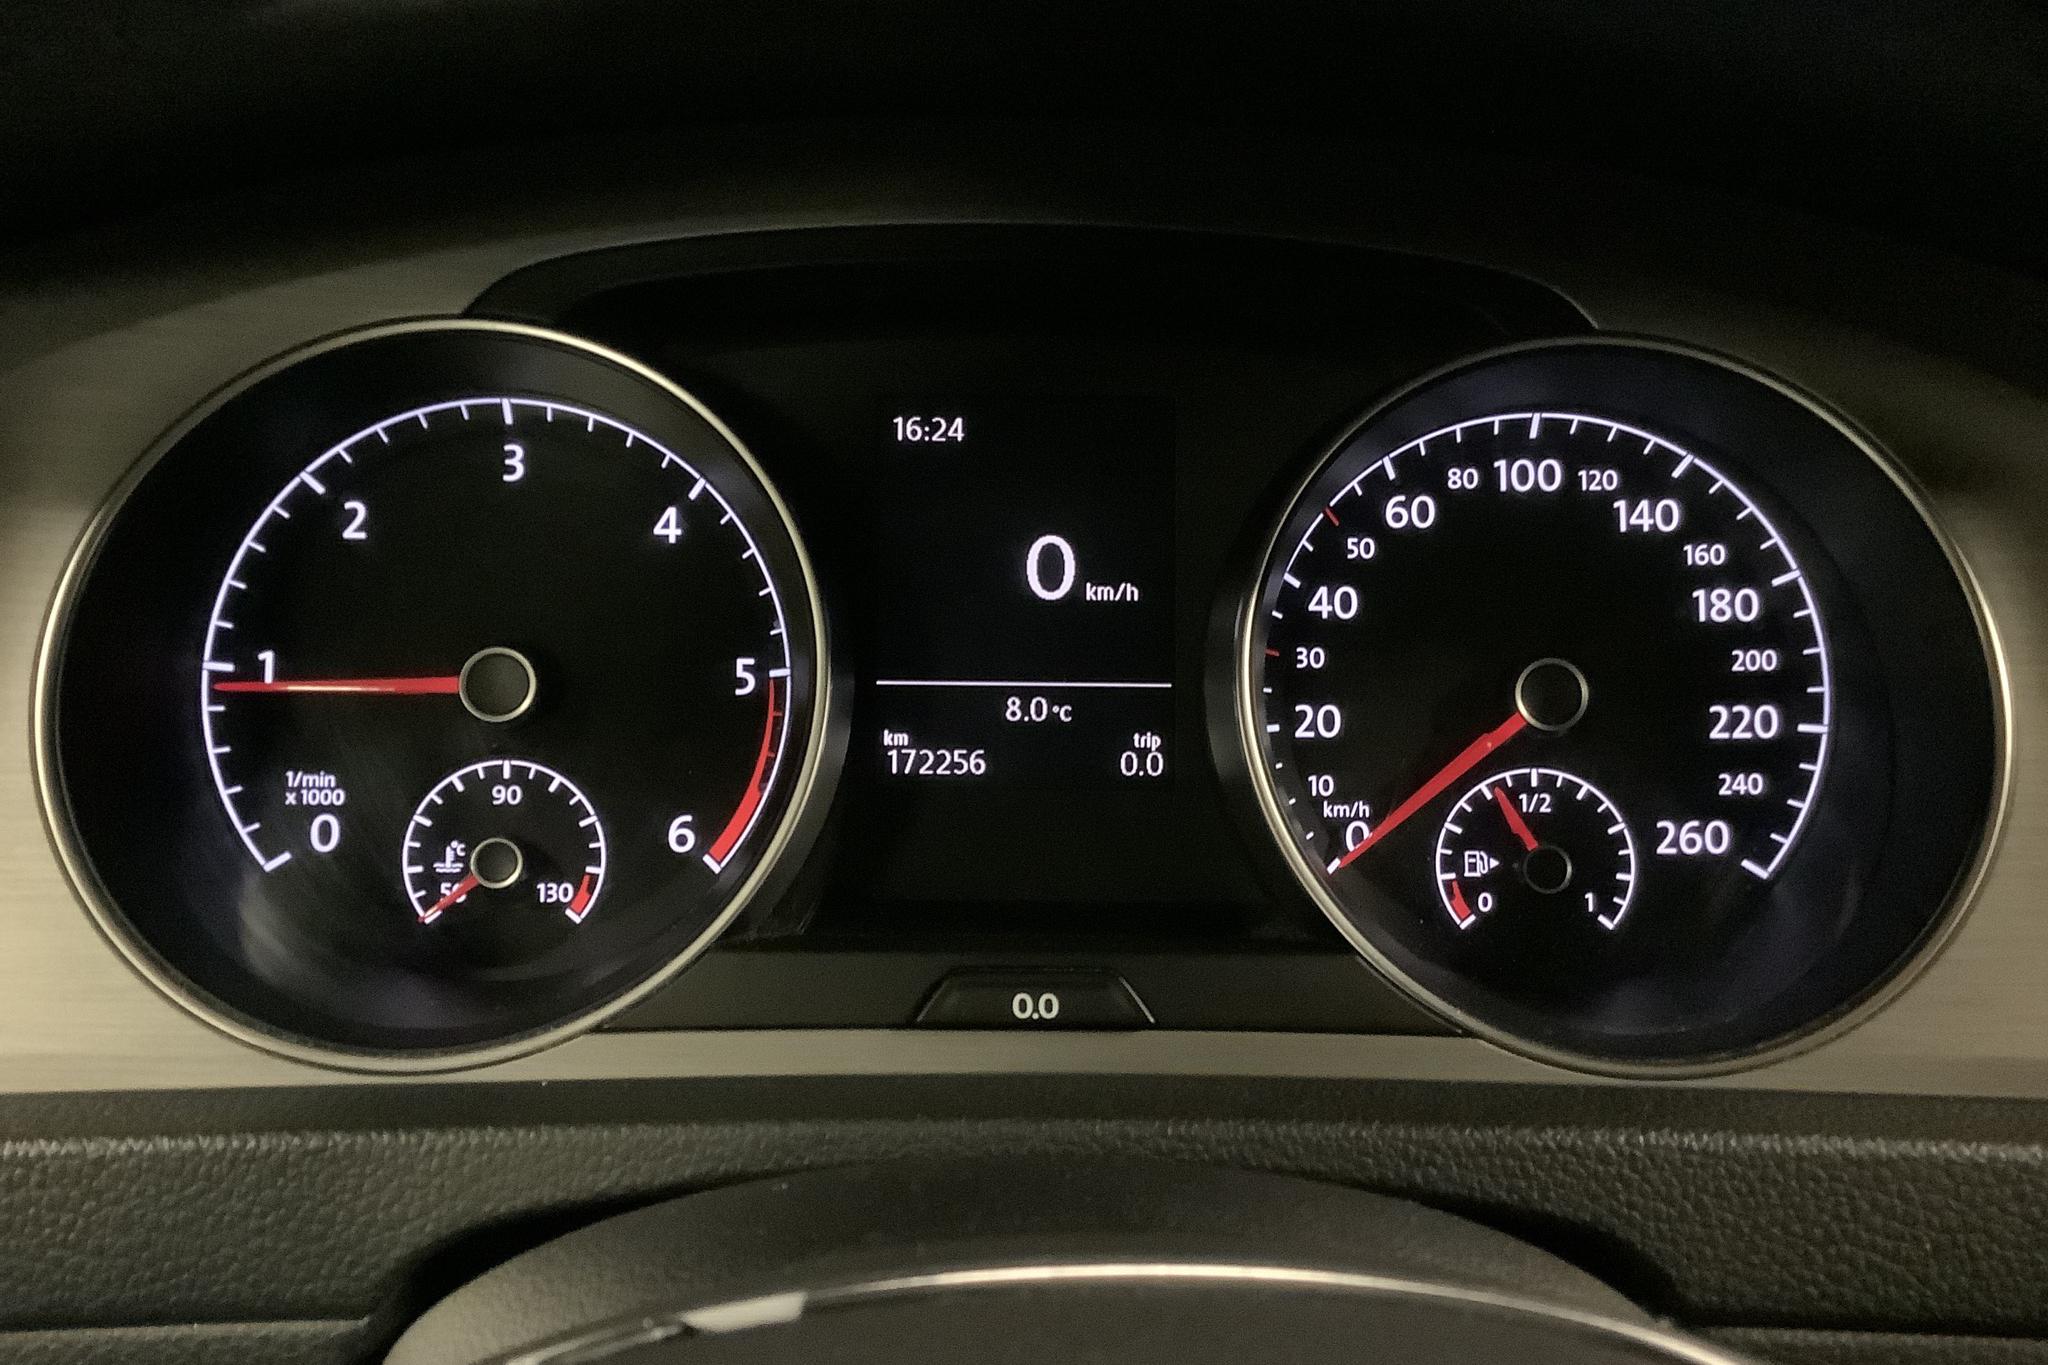 VW Golf VII 1.6 TDI BlueMotion Technology Sportscombi 4Motion (105hk) - 17 230 mil - Manuell - röd - 2014